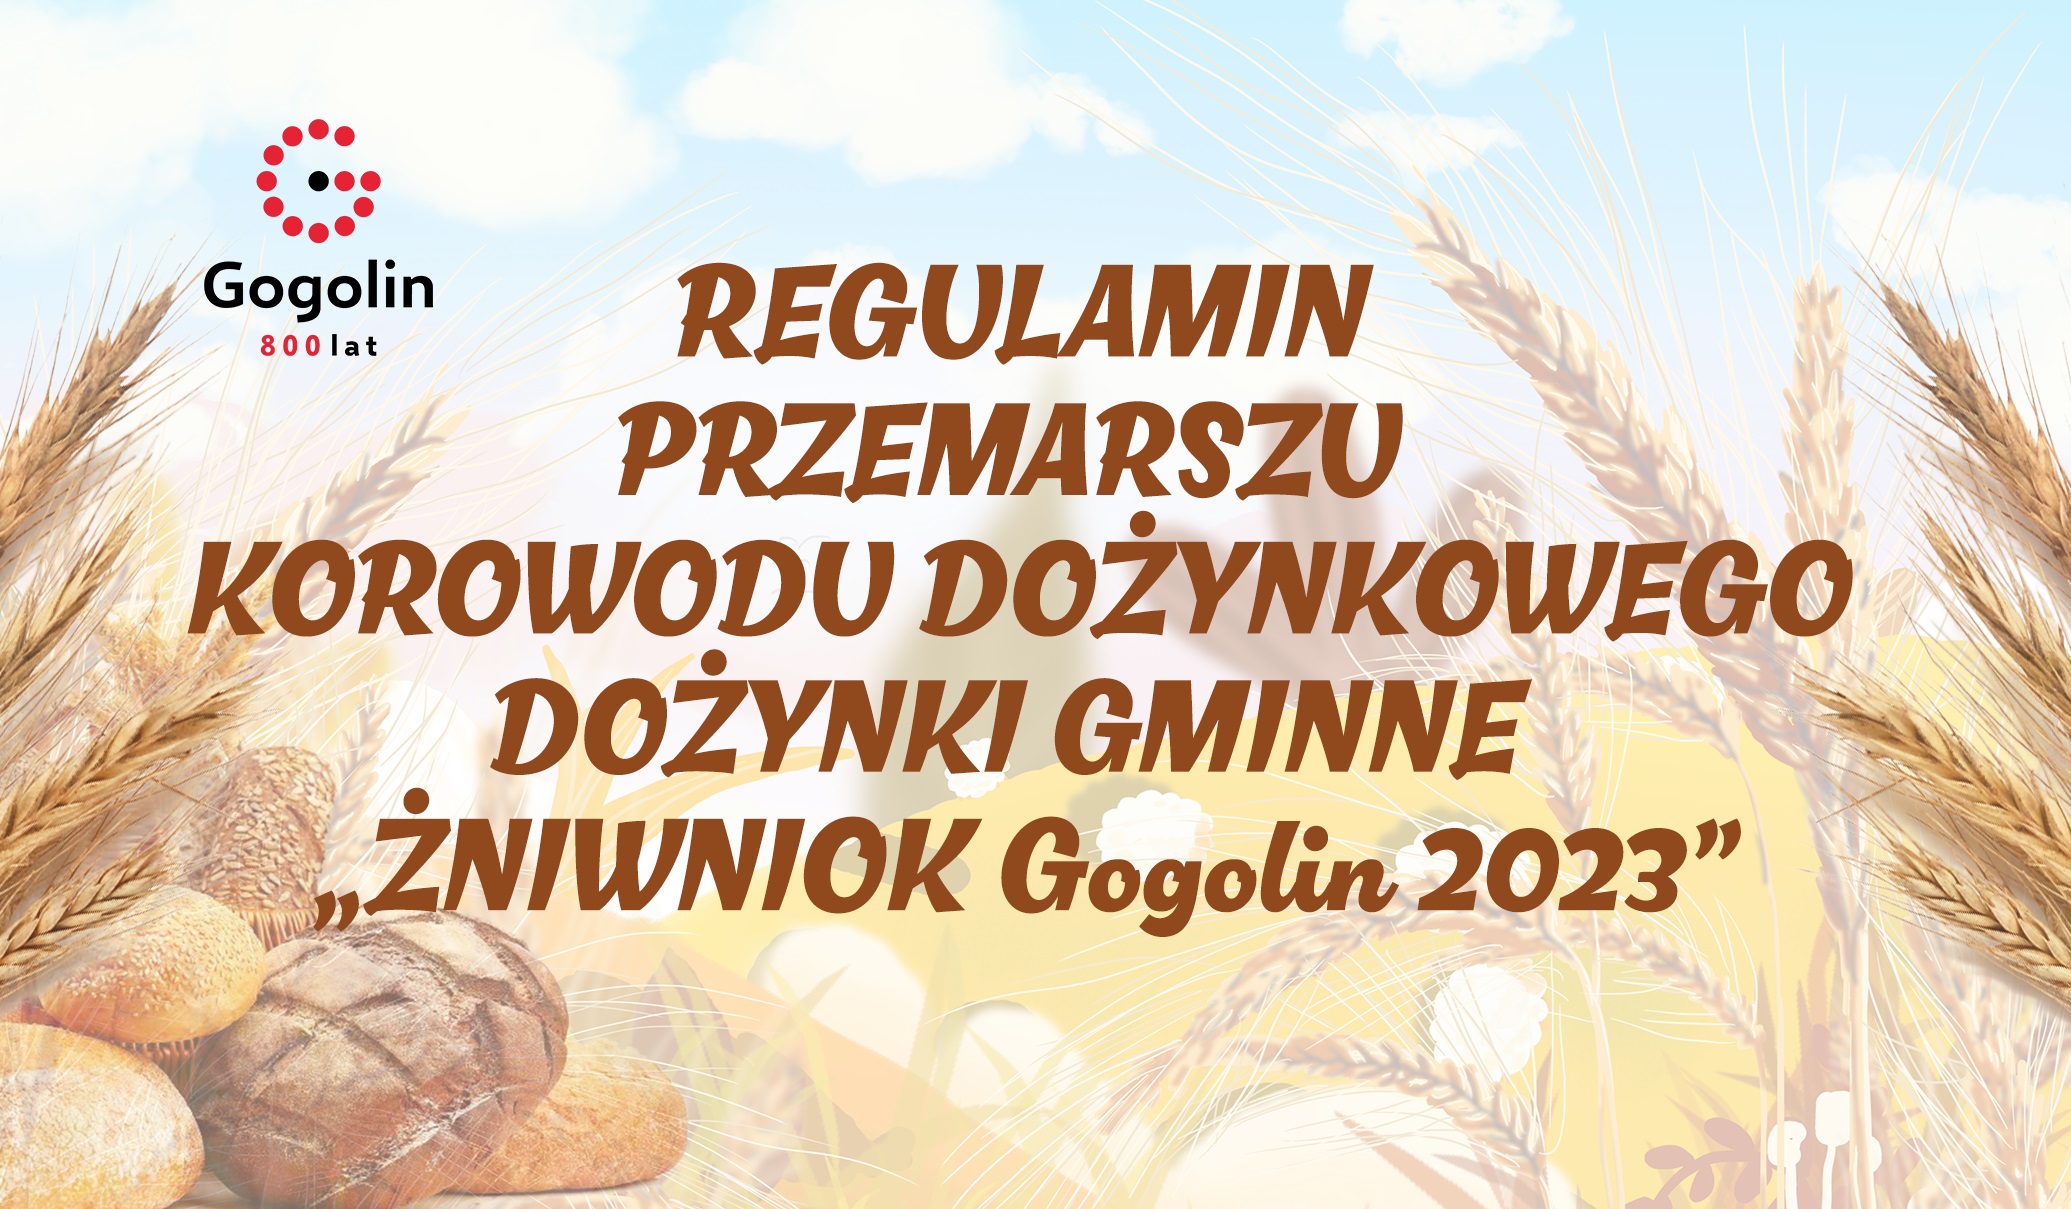 REGULAMIN PRZEMARSZU KOROWODU DOŻYNKOWEGO „ŻNIWNIOK Gogolin 2023”